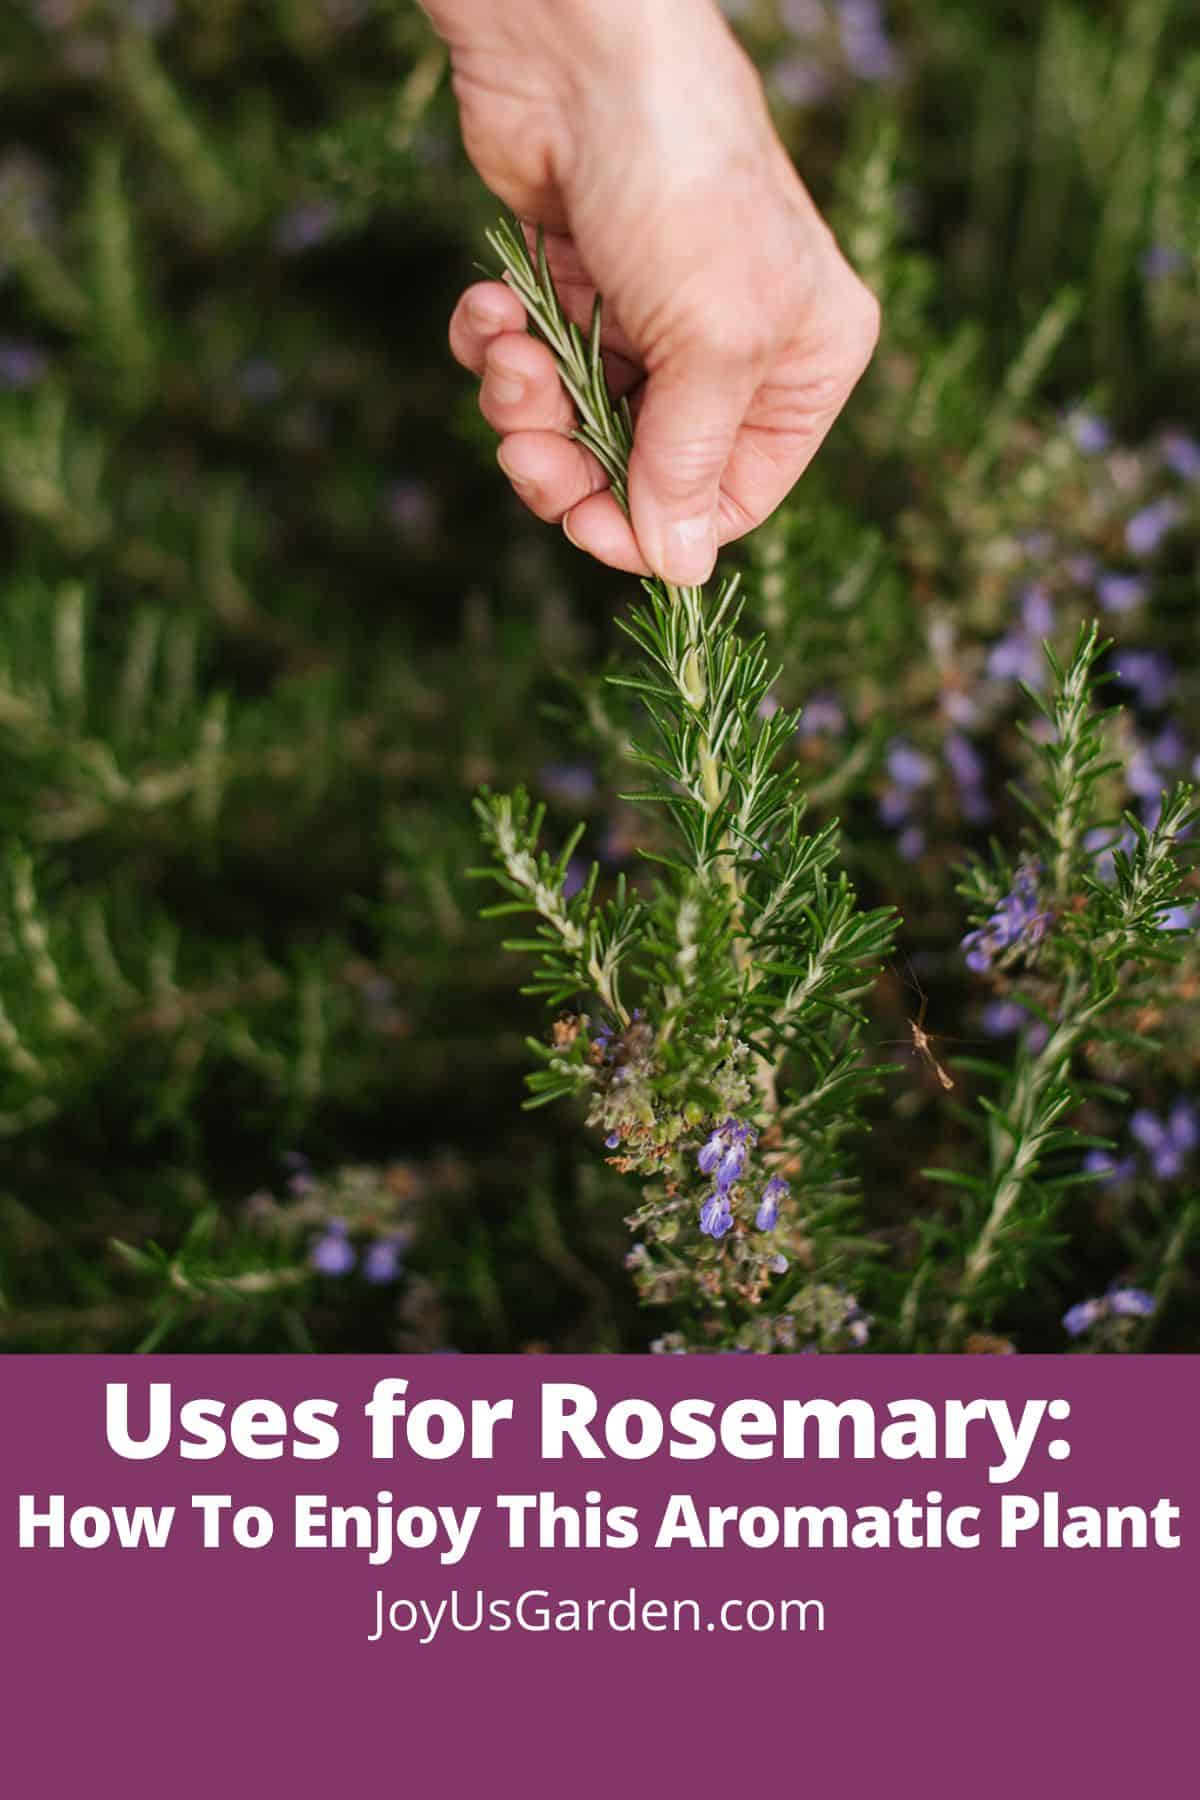  ການນໍາໃຊ້ສໍາລັບ Rosemary: ວິທີການເພີດເພີນກັບພືດທີ່ມີກິ່ນຫອມນີ້